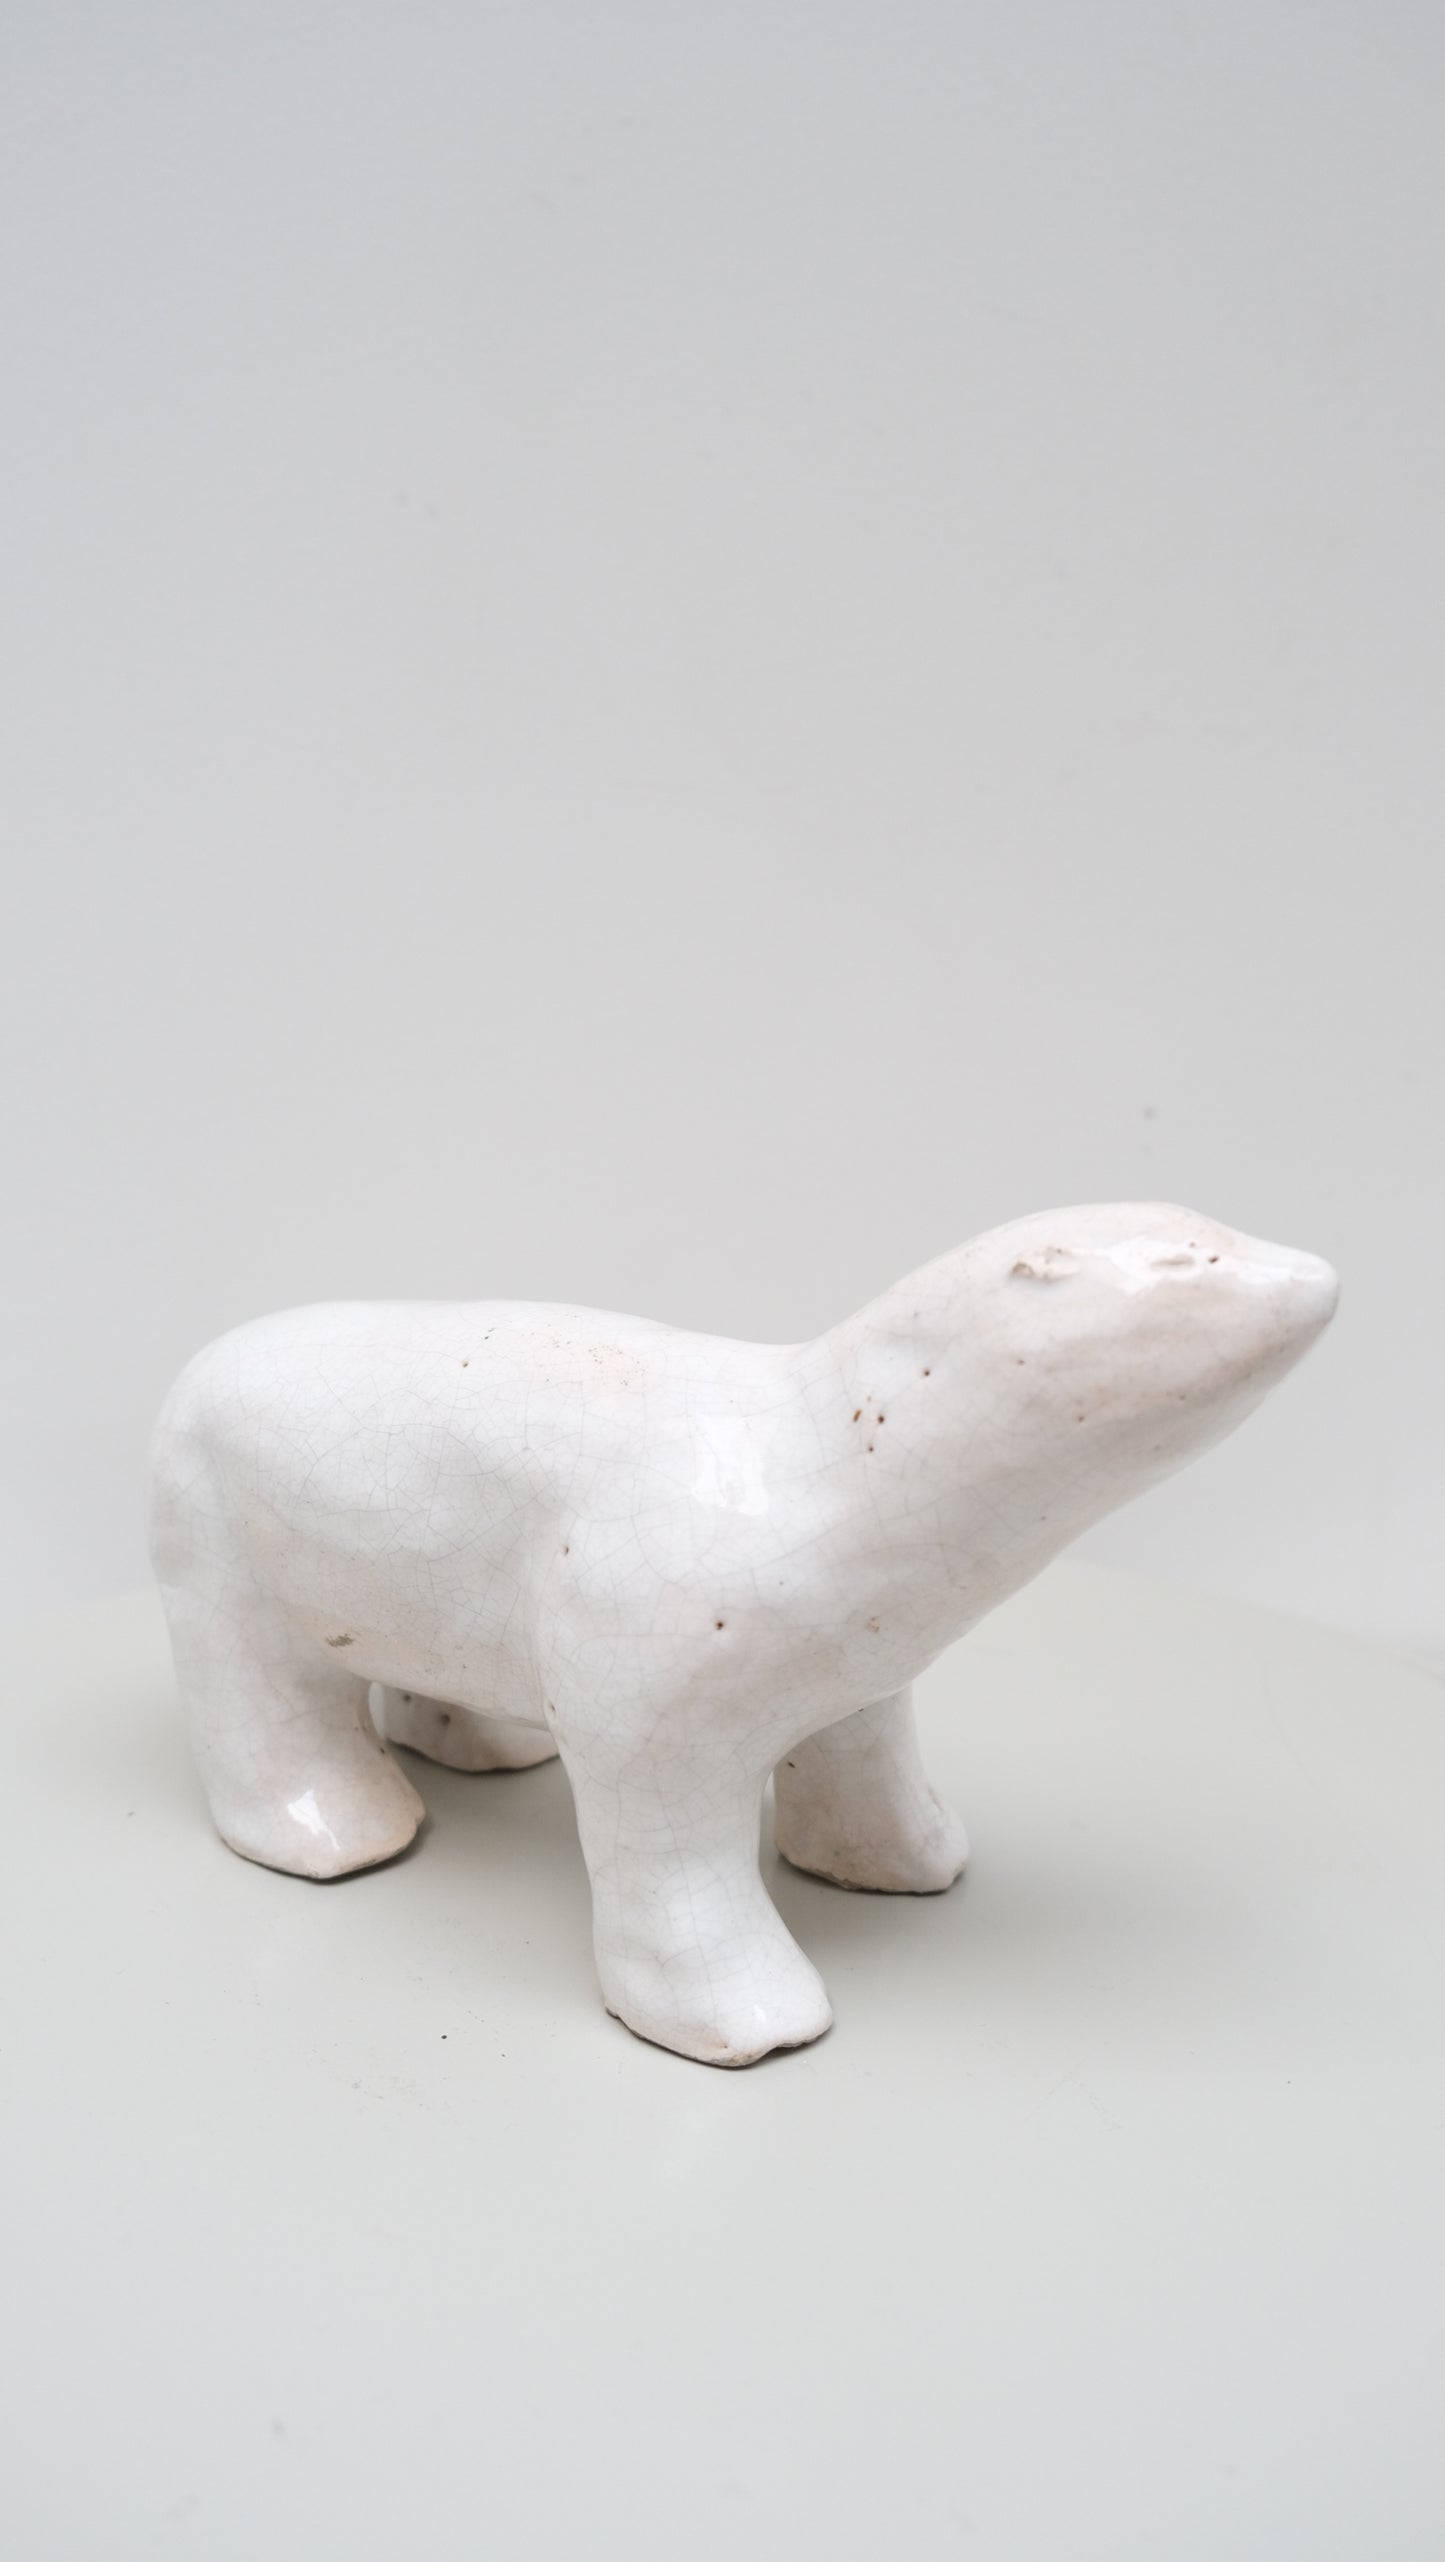 Ours blanc en céramique - Arts décoratifs - La Nouvelle Galerie 